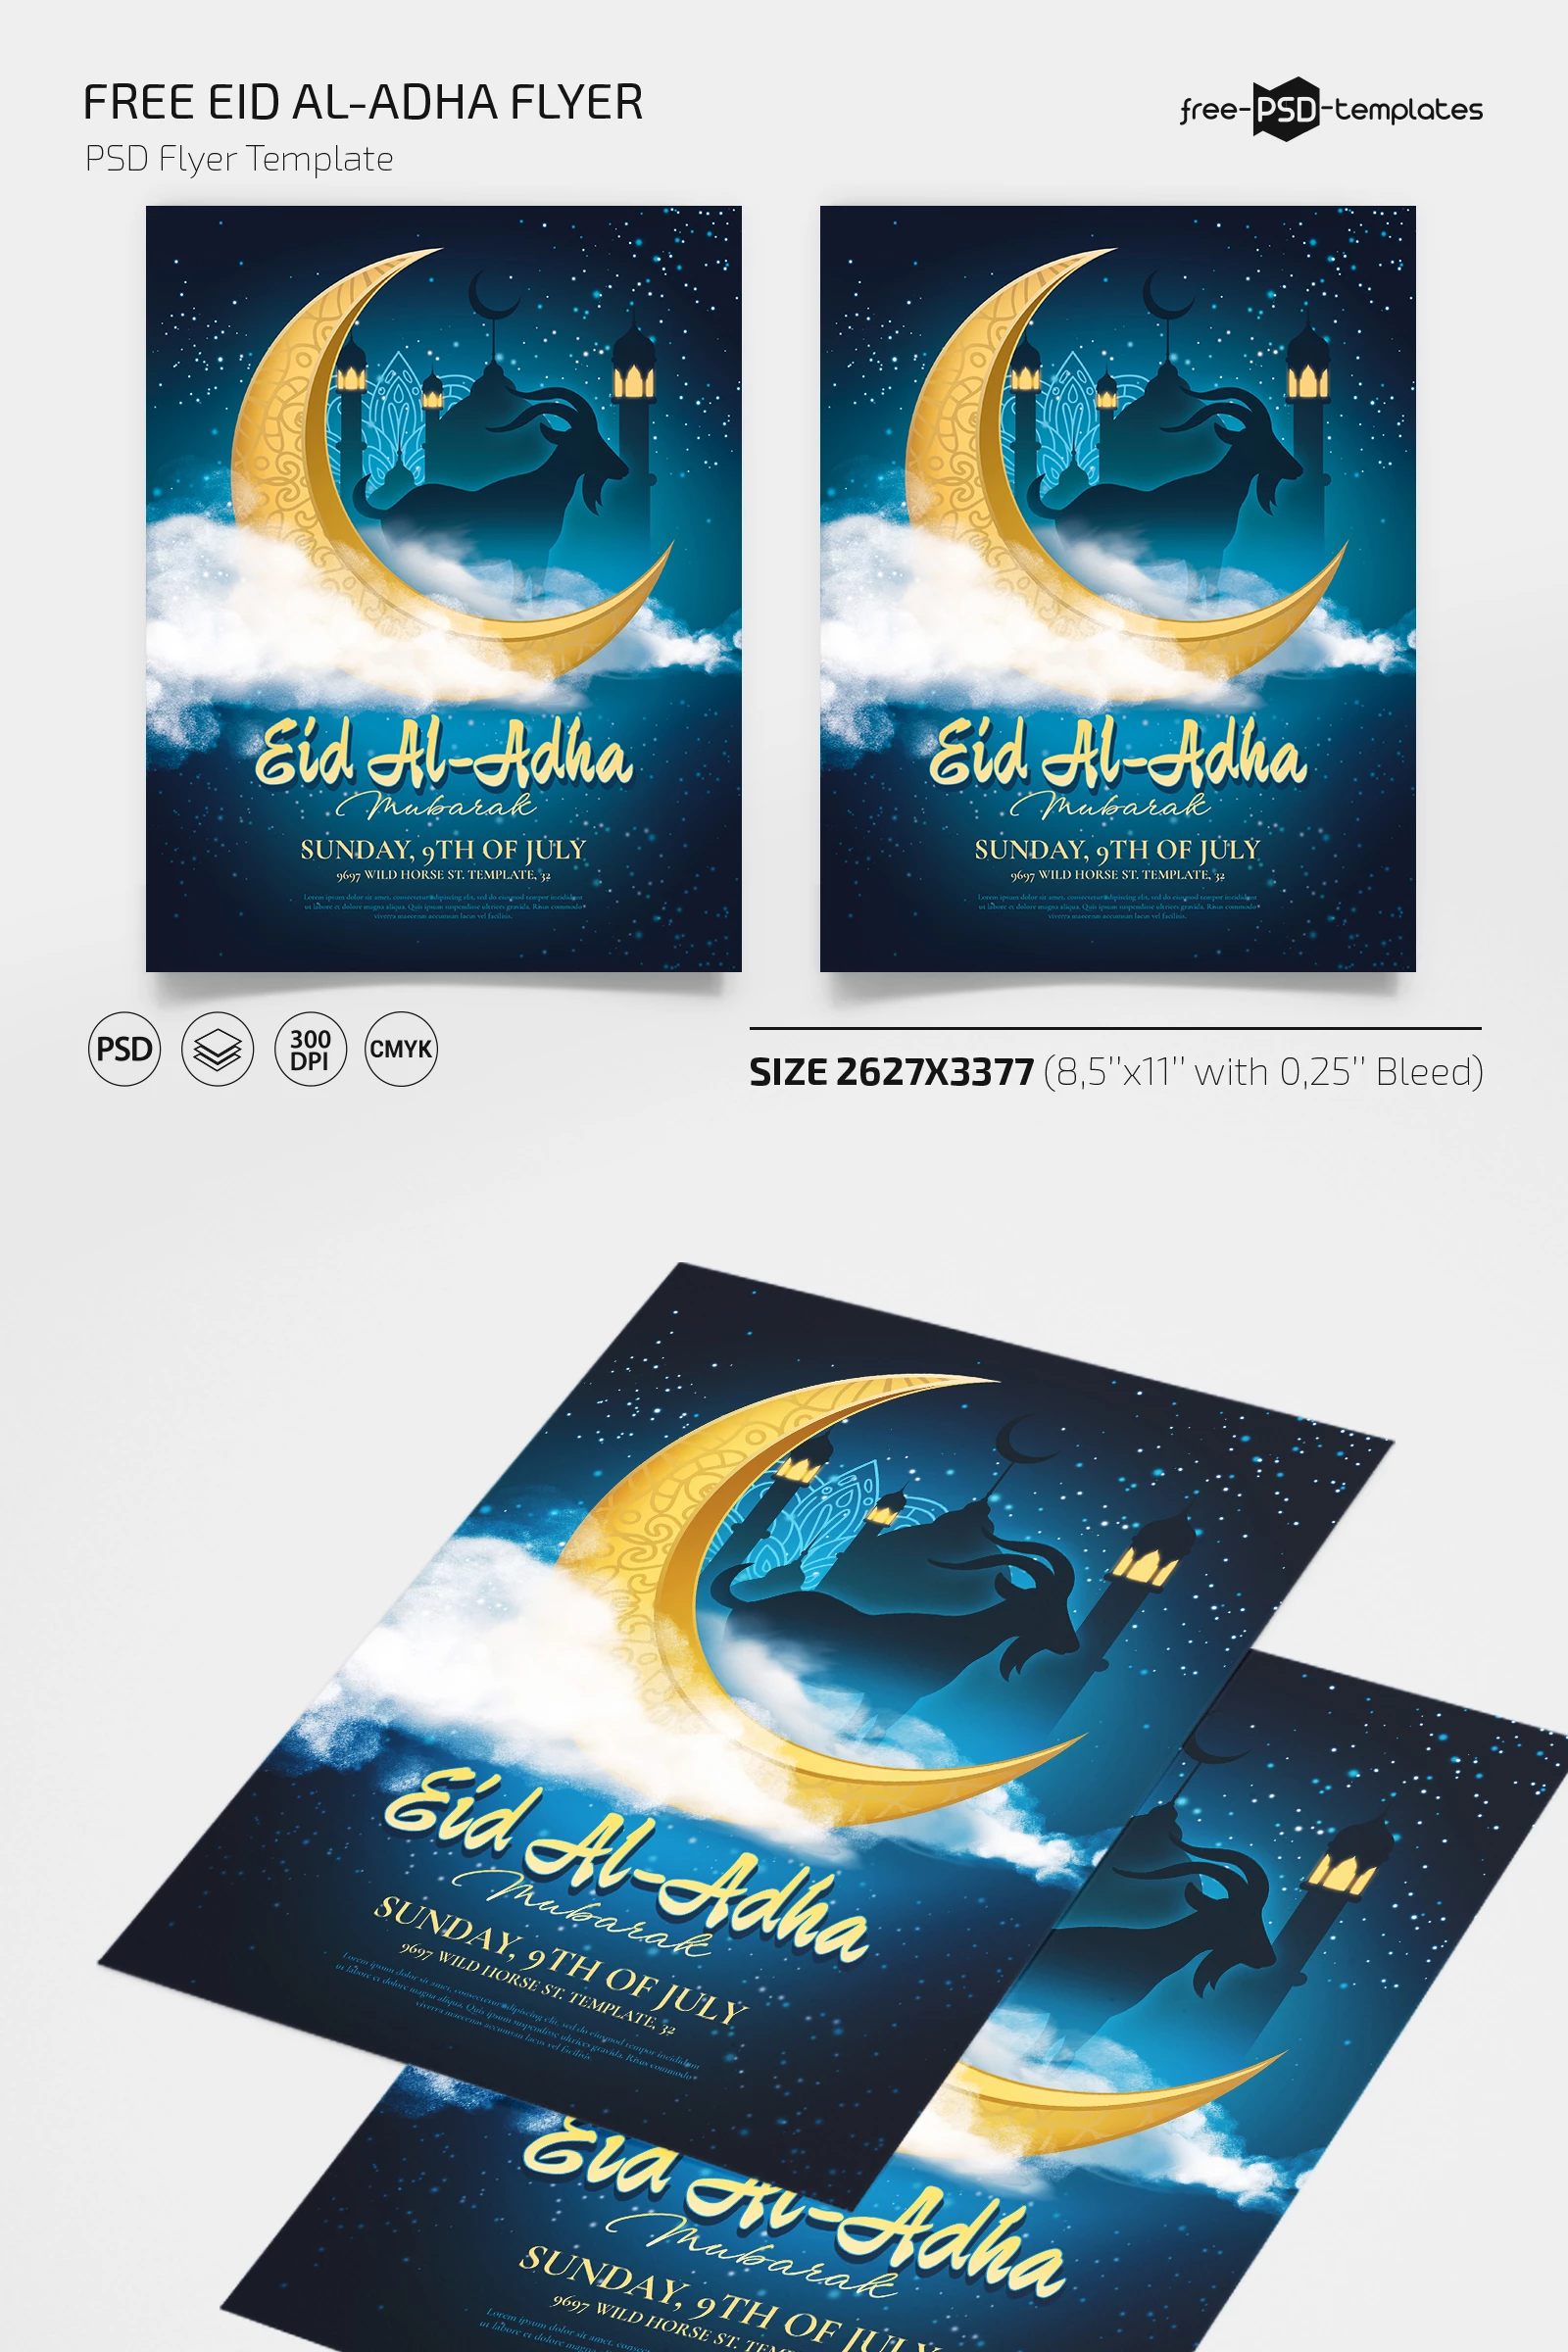 Free Eid Al-Adha Flyer PSD Template